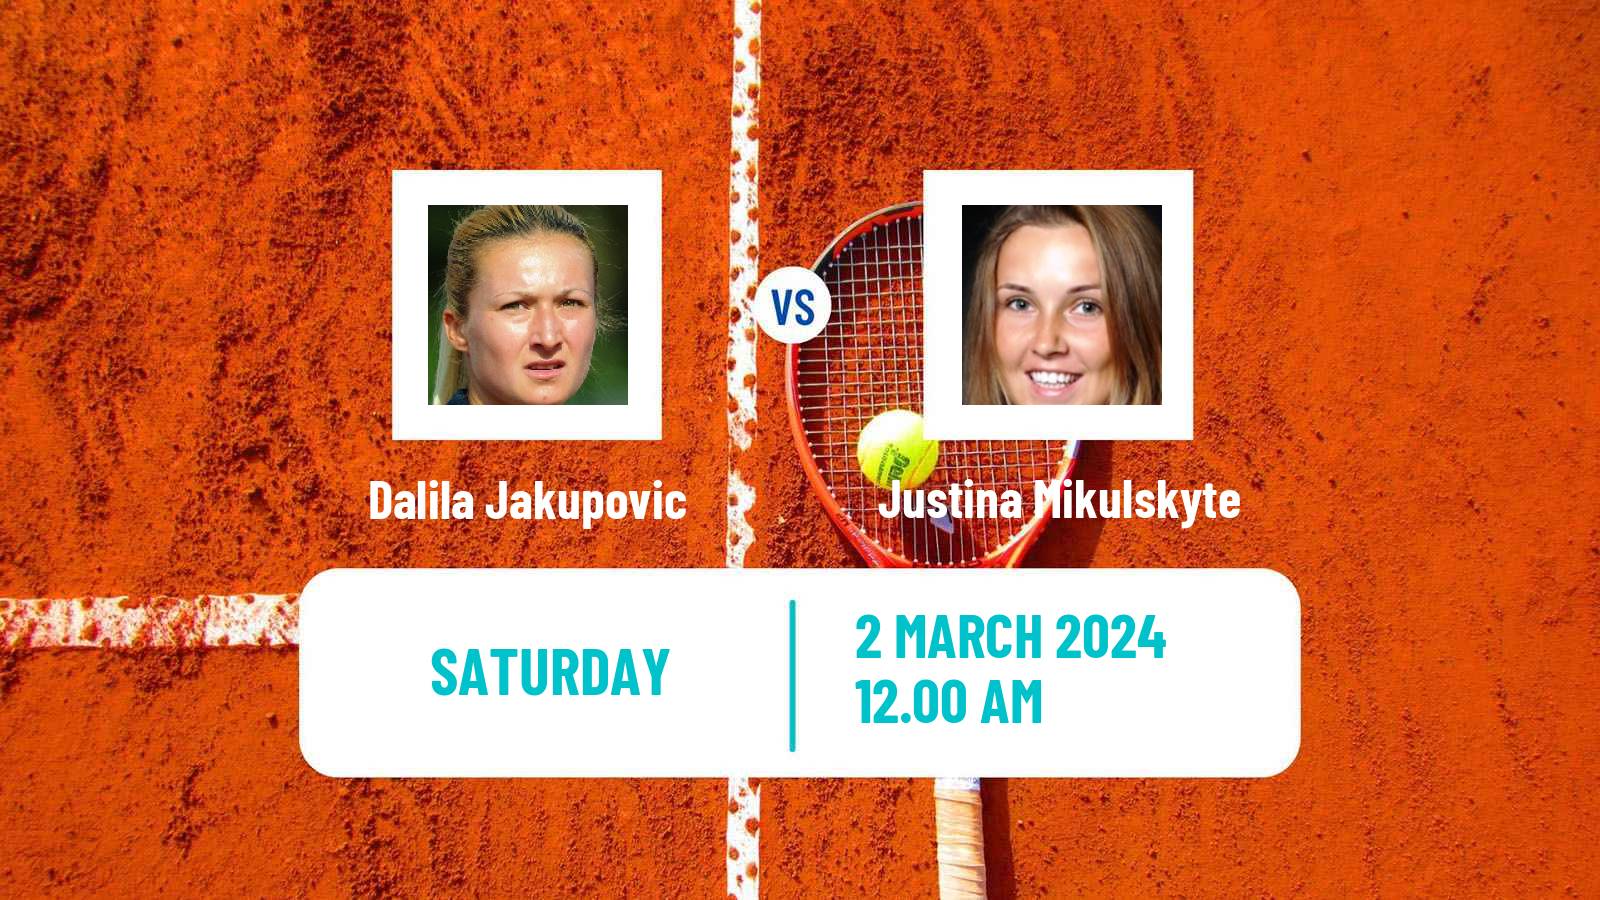 Tennis ITF W35 Gurugram Women Dalila Jakupovic - Justina Mikulskyte